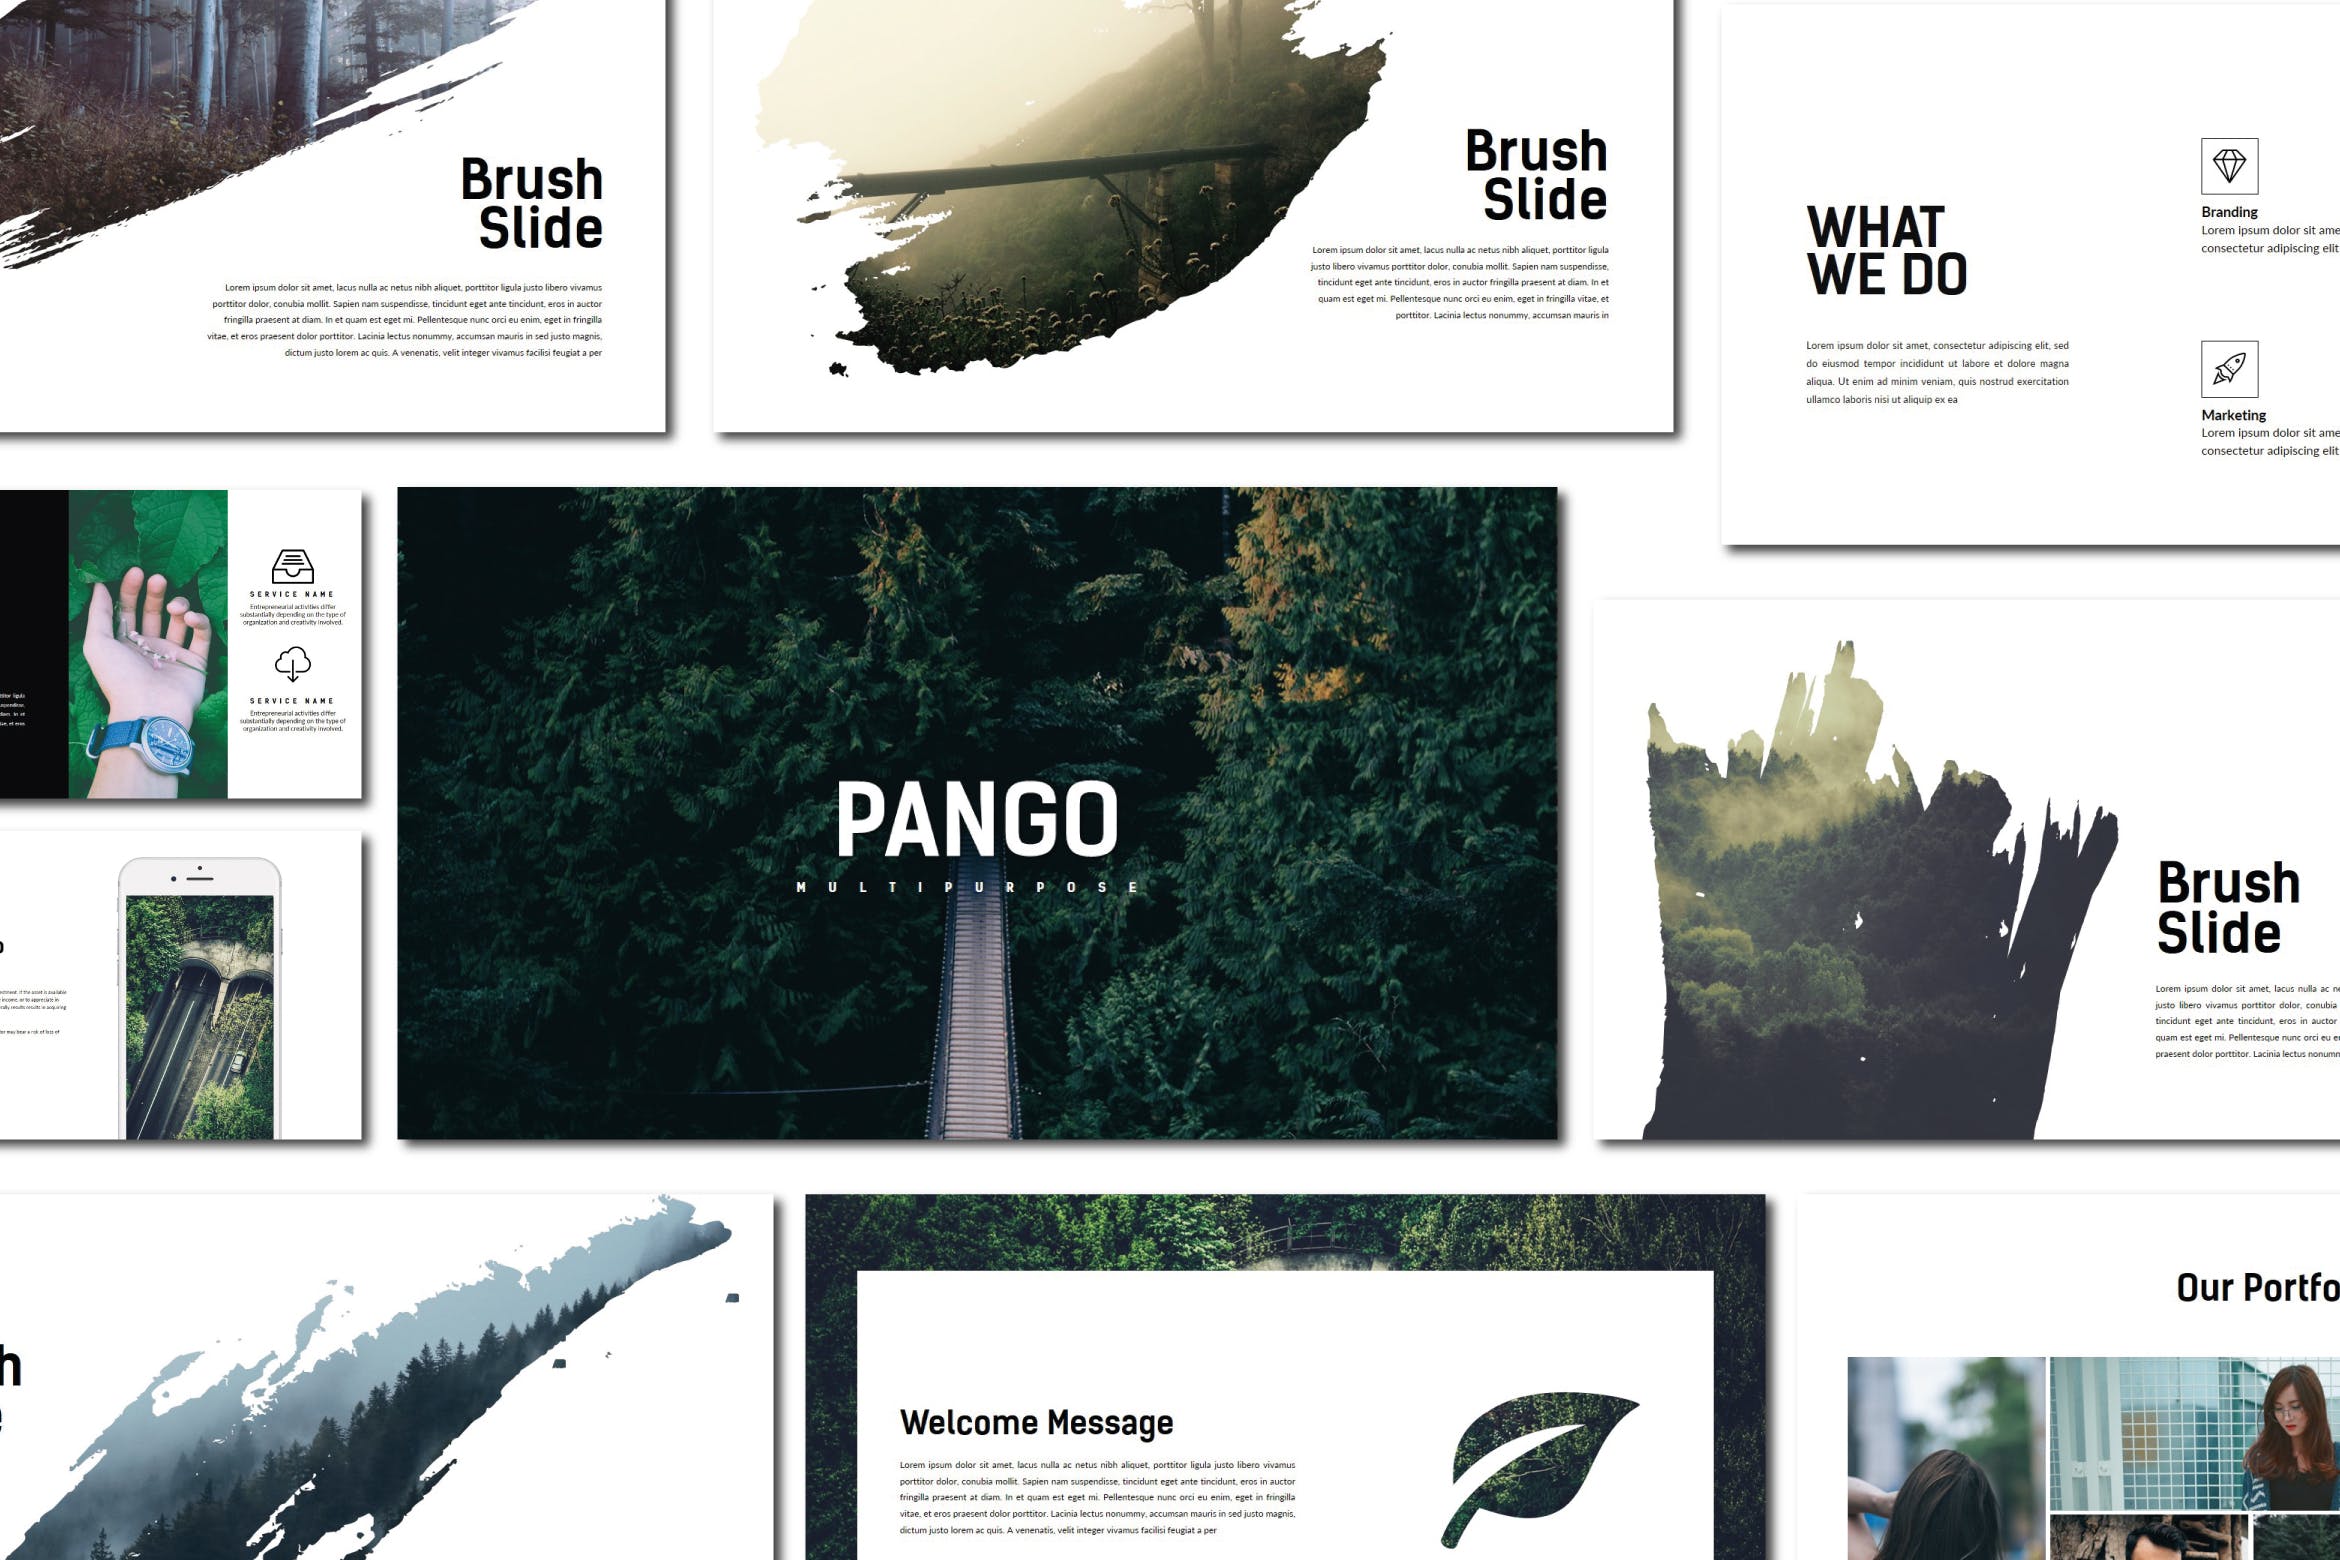 创意摄影/设计/策划工作室素材天下精选PPT模板 Pango | Powerpoint Template插图